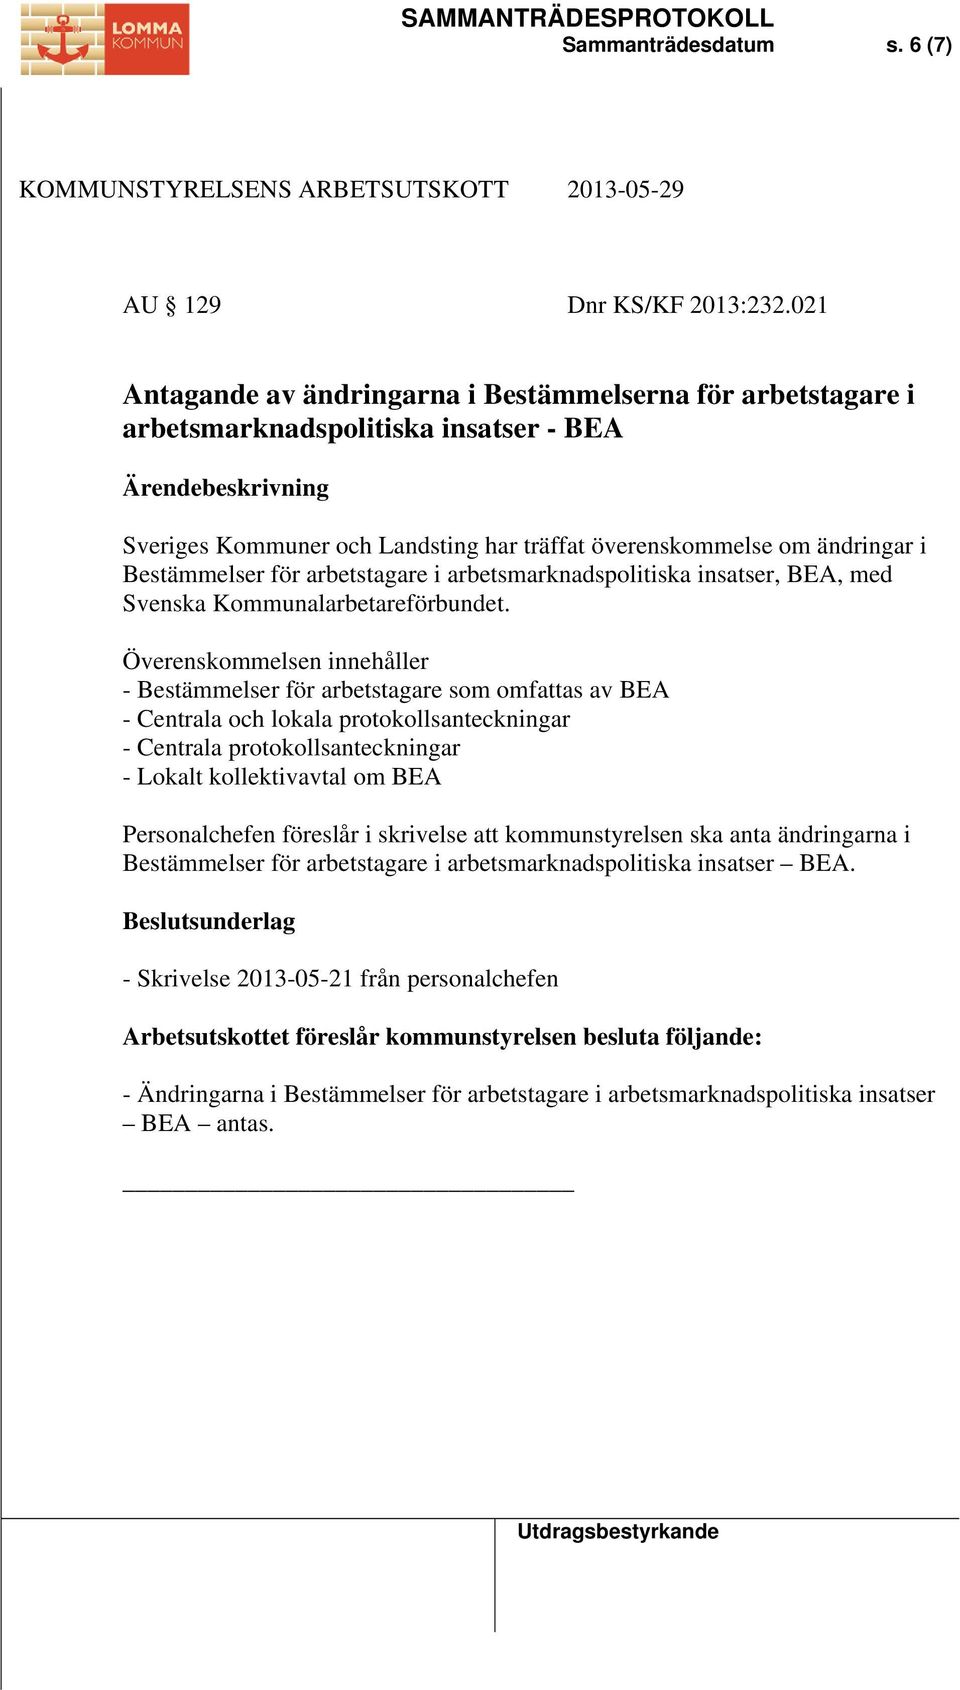 arbetstagare i arbetsmarknadspolitiska insatser, BEA, med Svenska Kommunalarbetareförbundet.